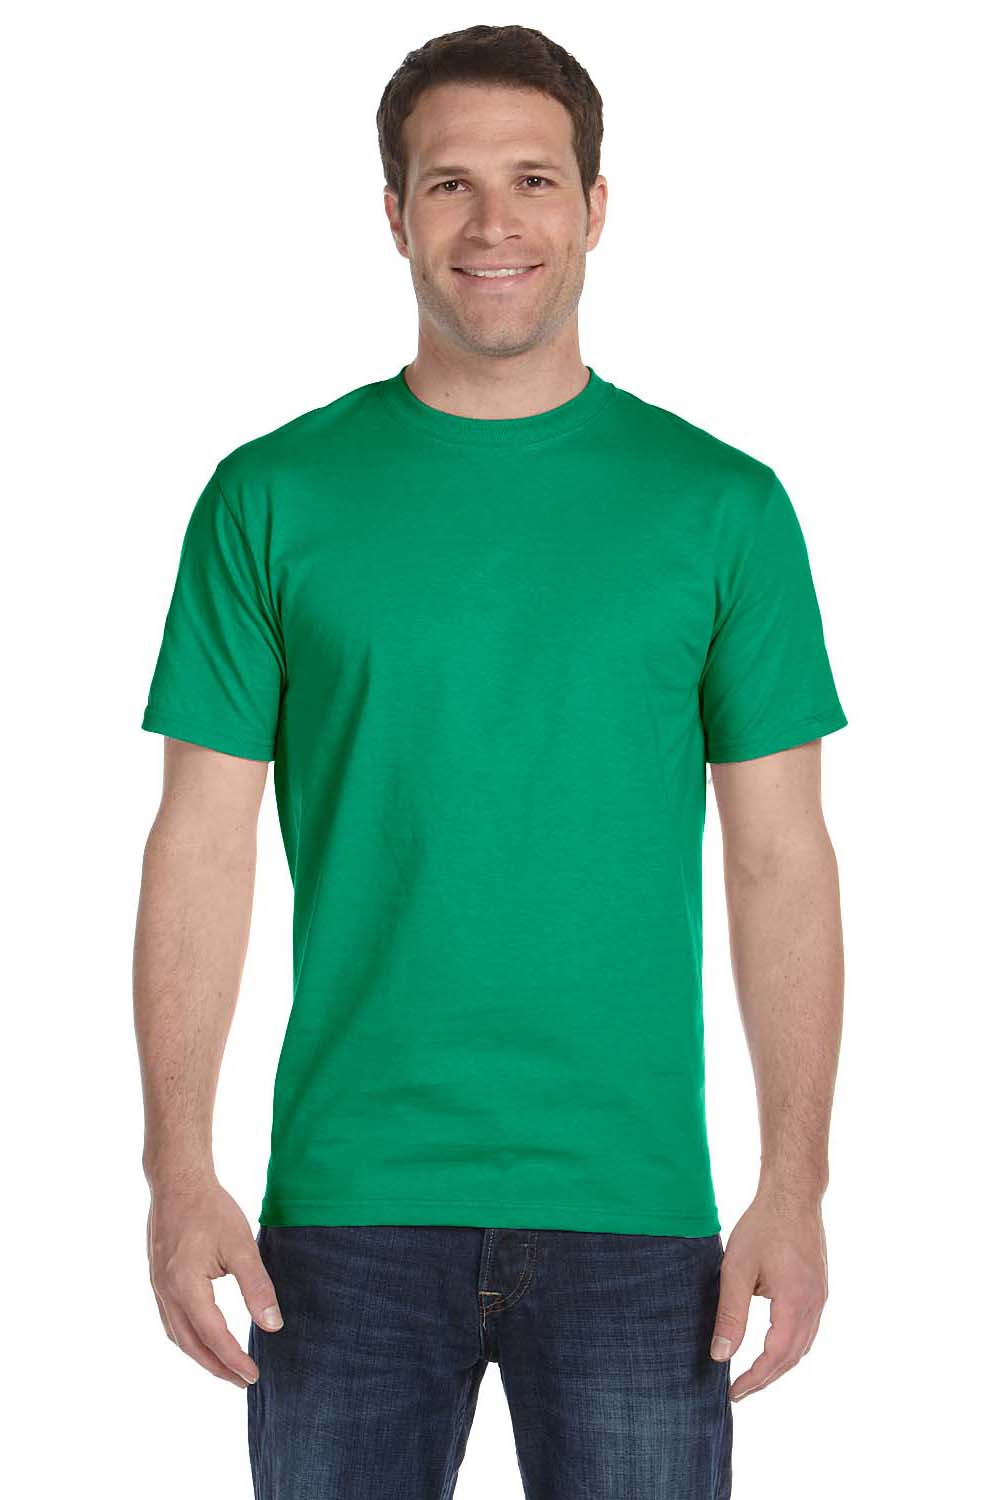 Gildan G800 Mens DryBlend Moisture Wicking Short Sleeve Crewneck T-Shirt Kelly Green Front